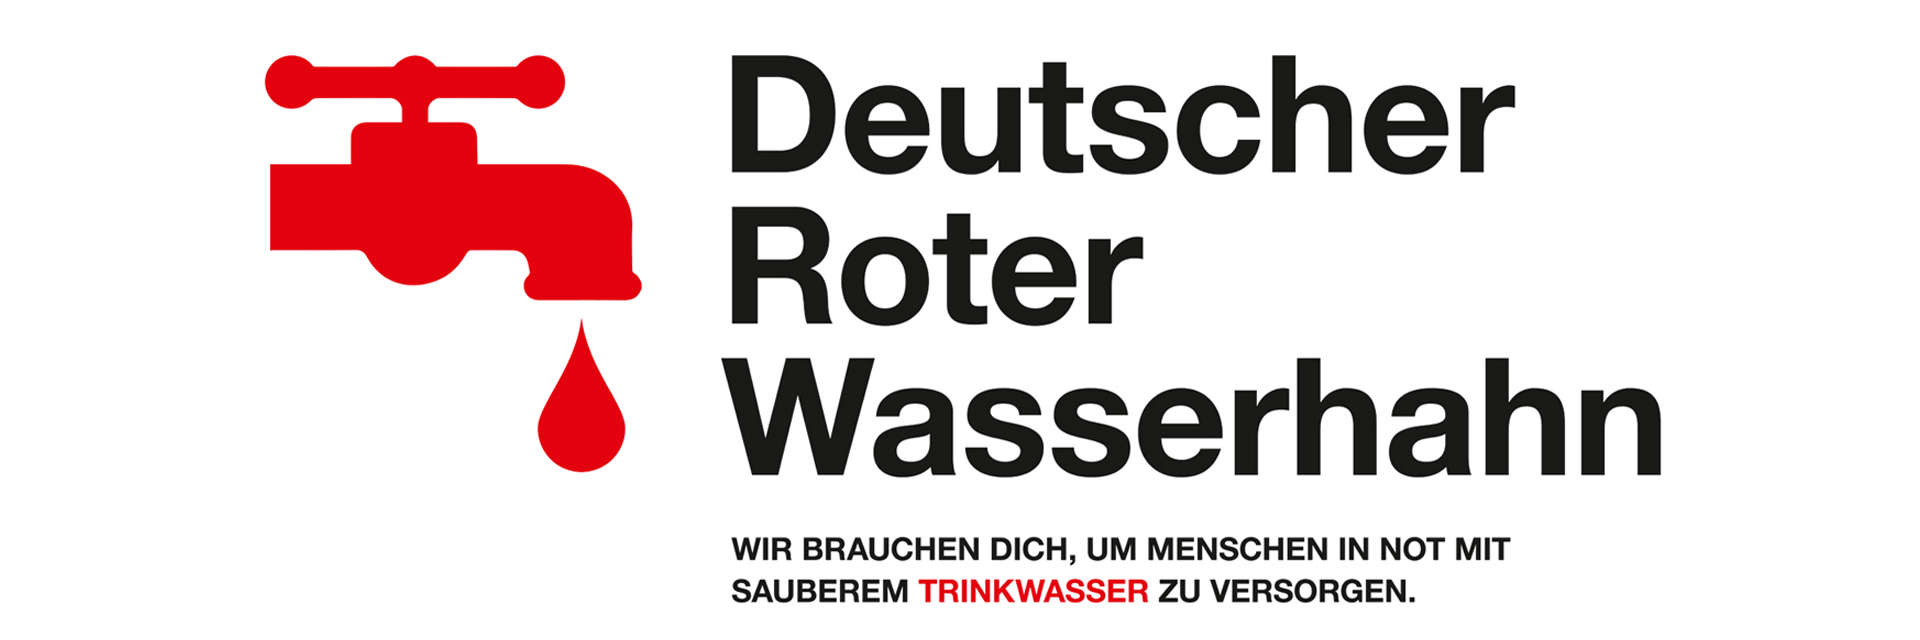 Grafik: DRK-Kampagnenmotiv "Deutscher Roter Wasserhahn" mit Wasserhahn-Piktogramm